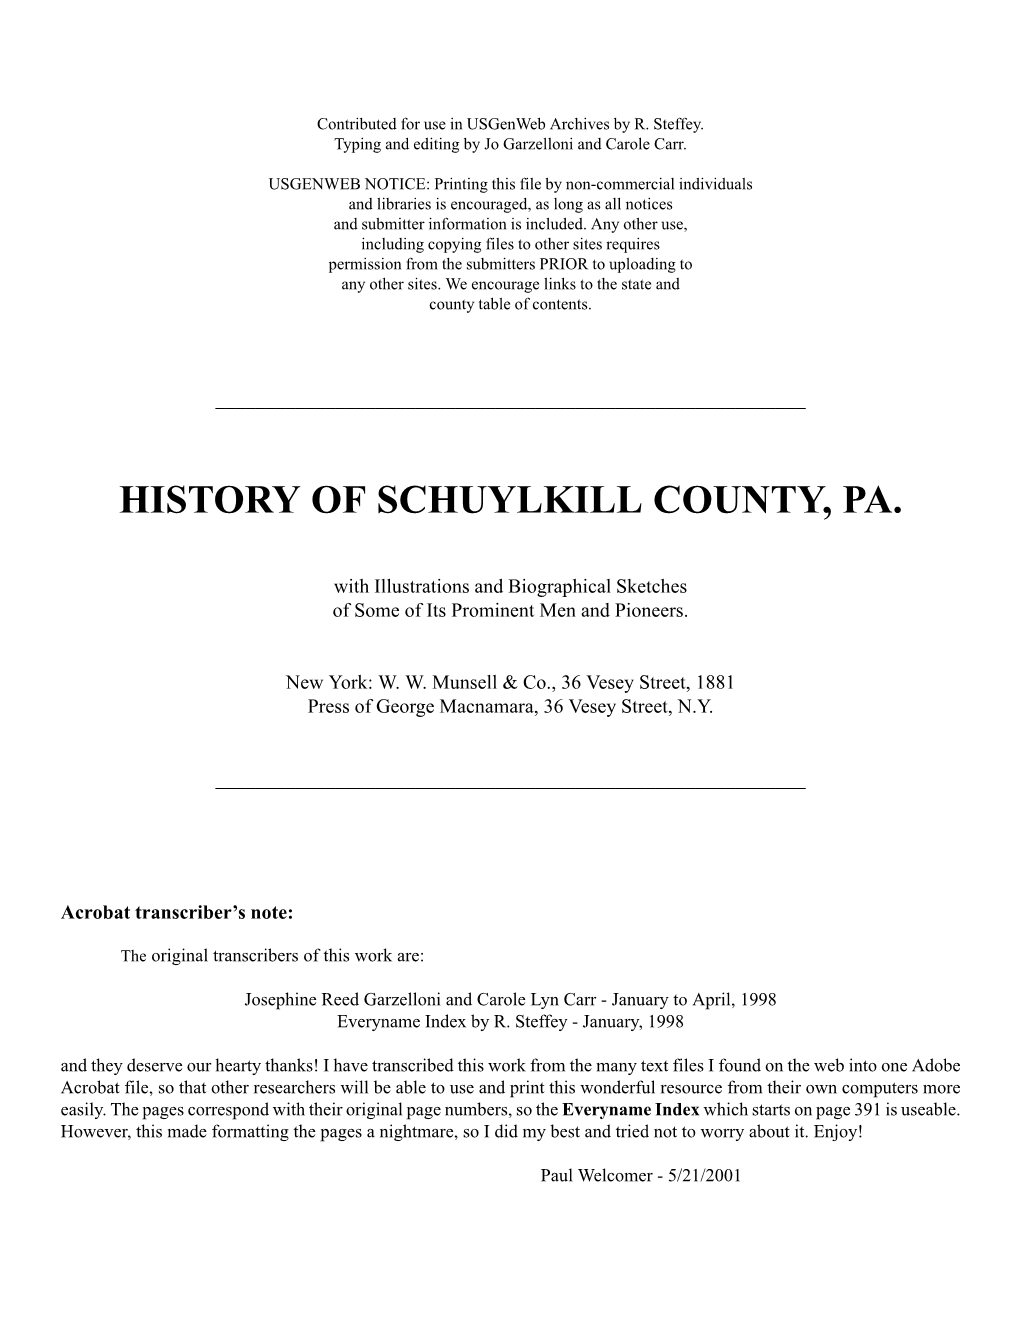 History of Schuylkill County, Pa